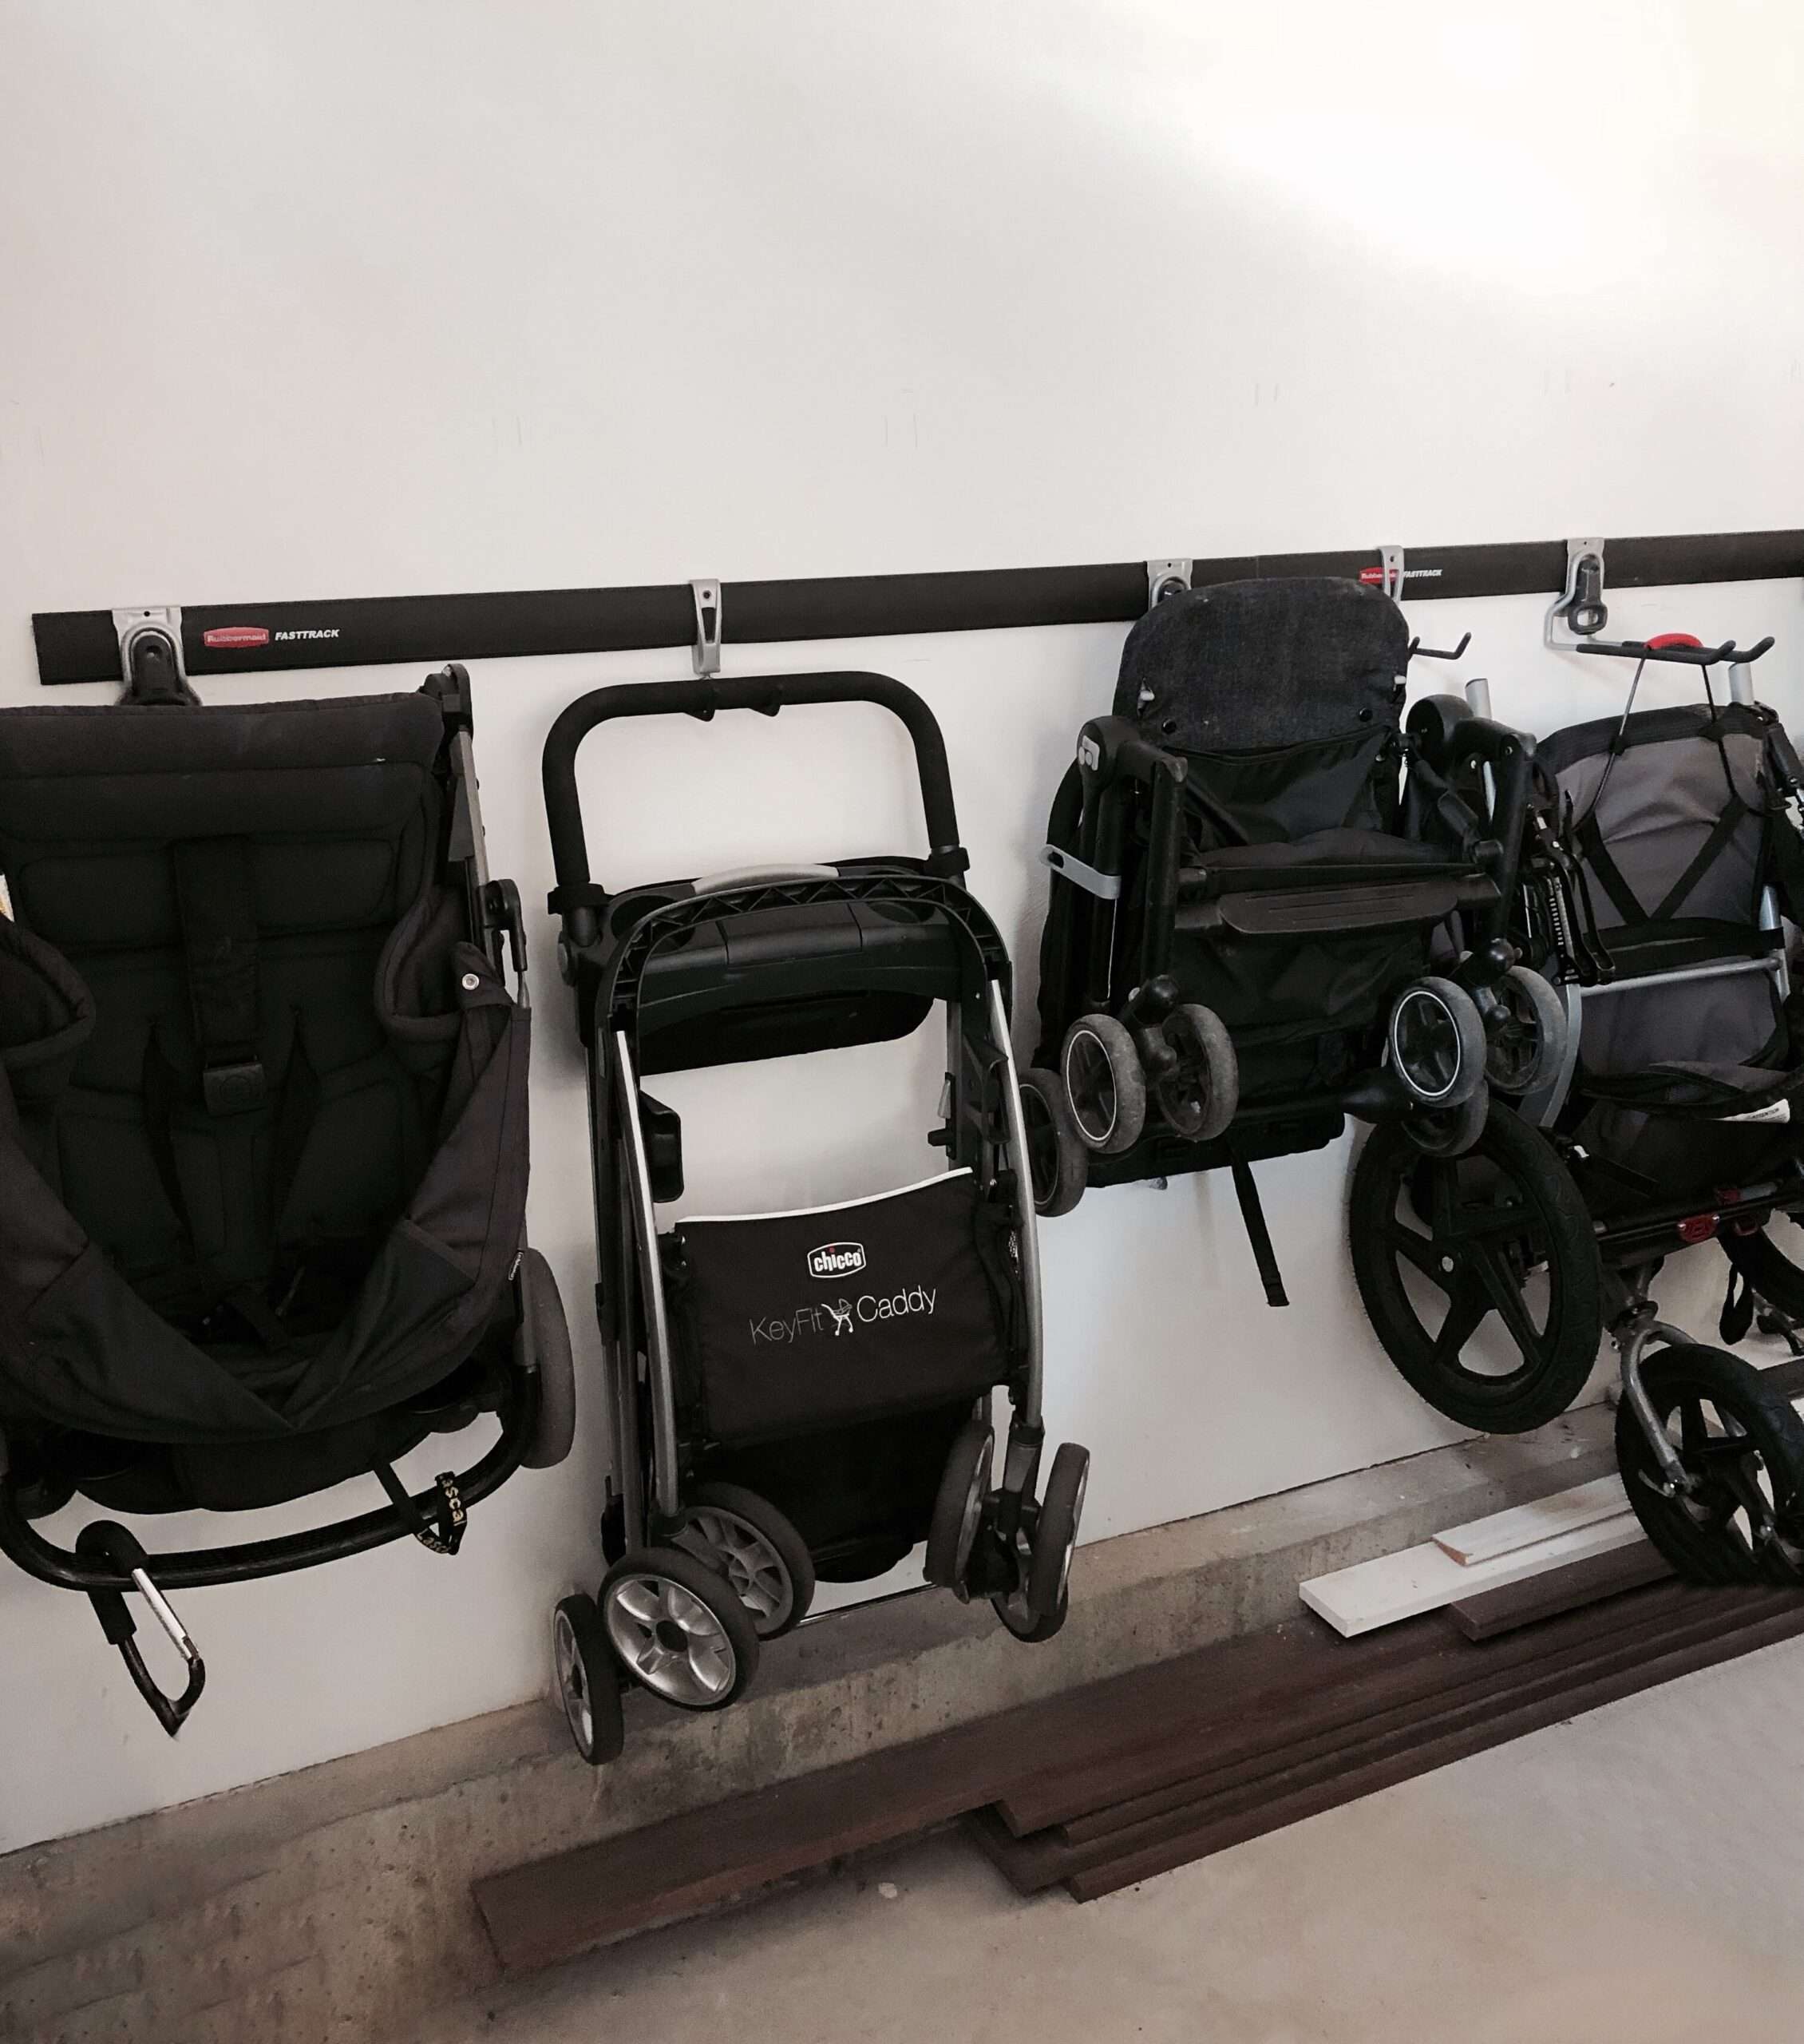 Garage stroller organization, found on Amazon